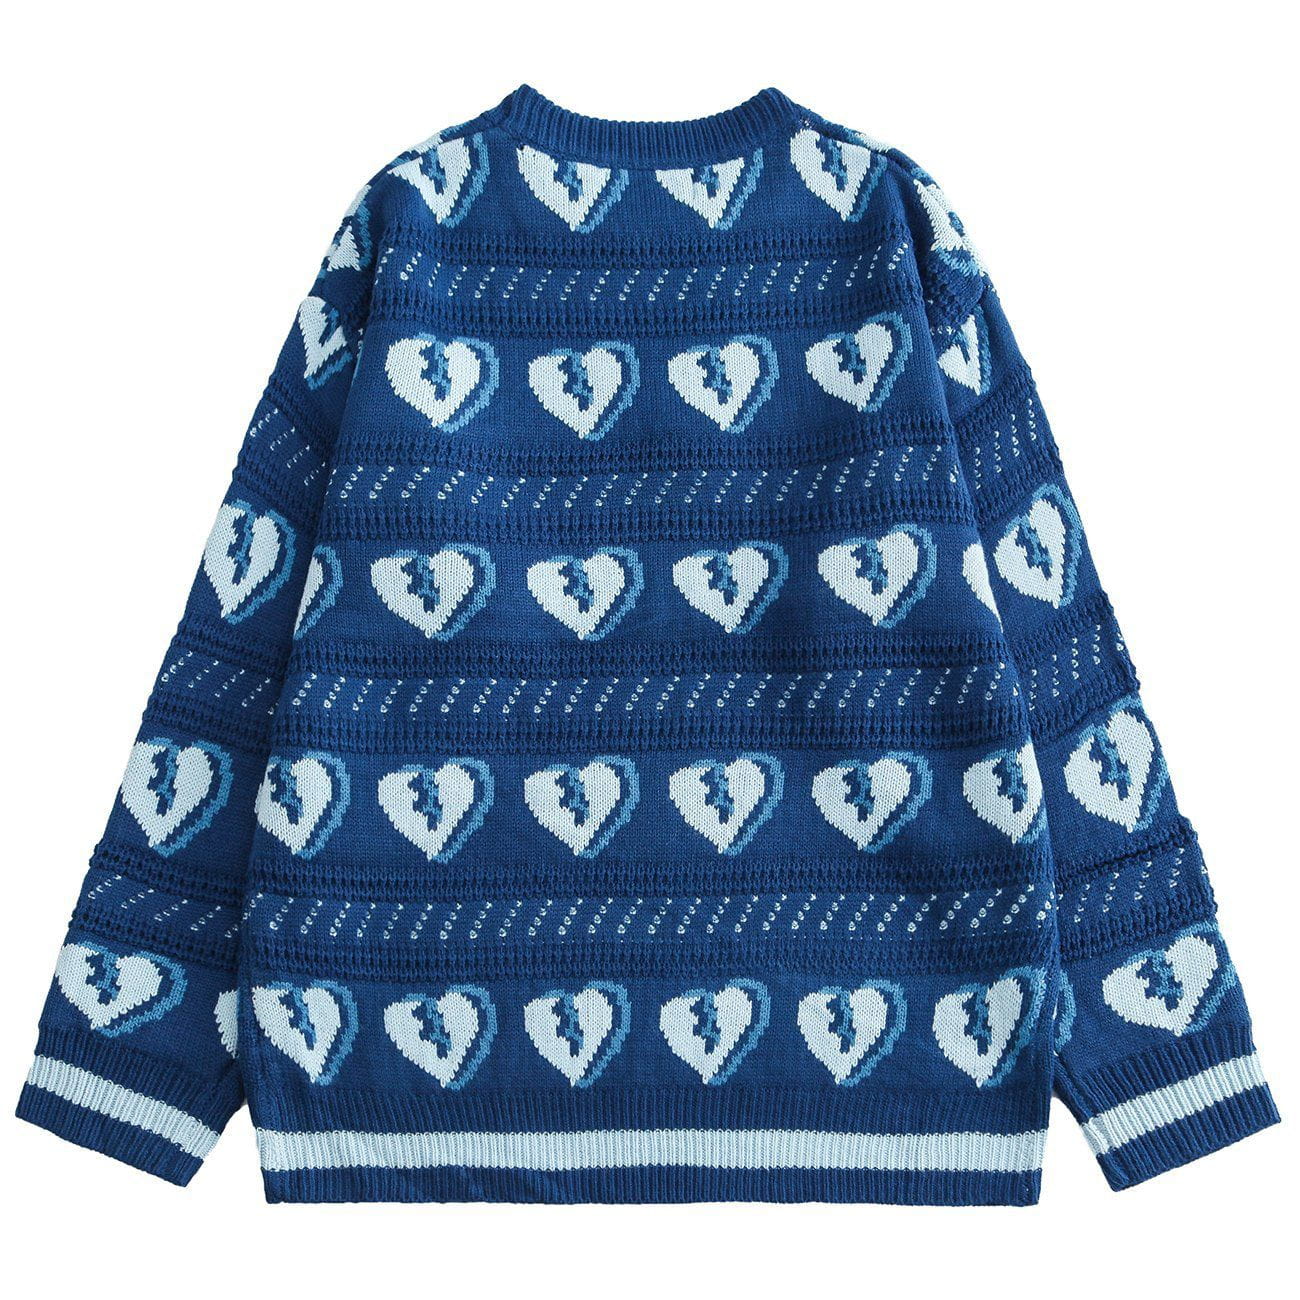 Majesda® - Broken Heart Pattern Knit Sweater outfit ideas streetwear fashion